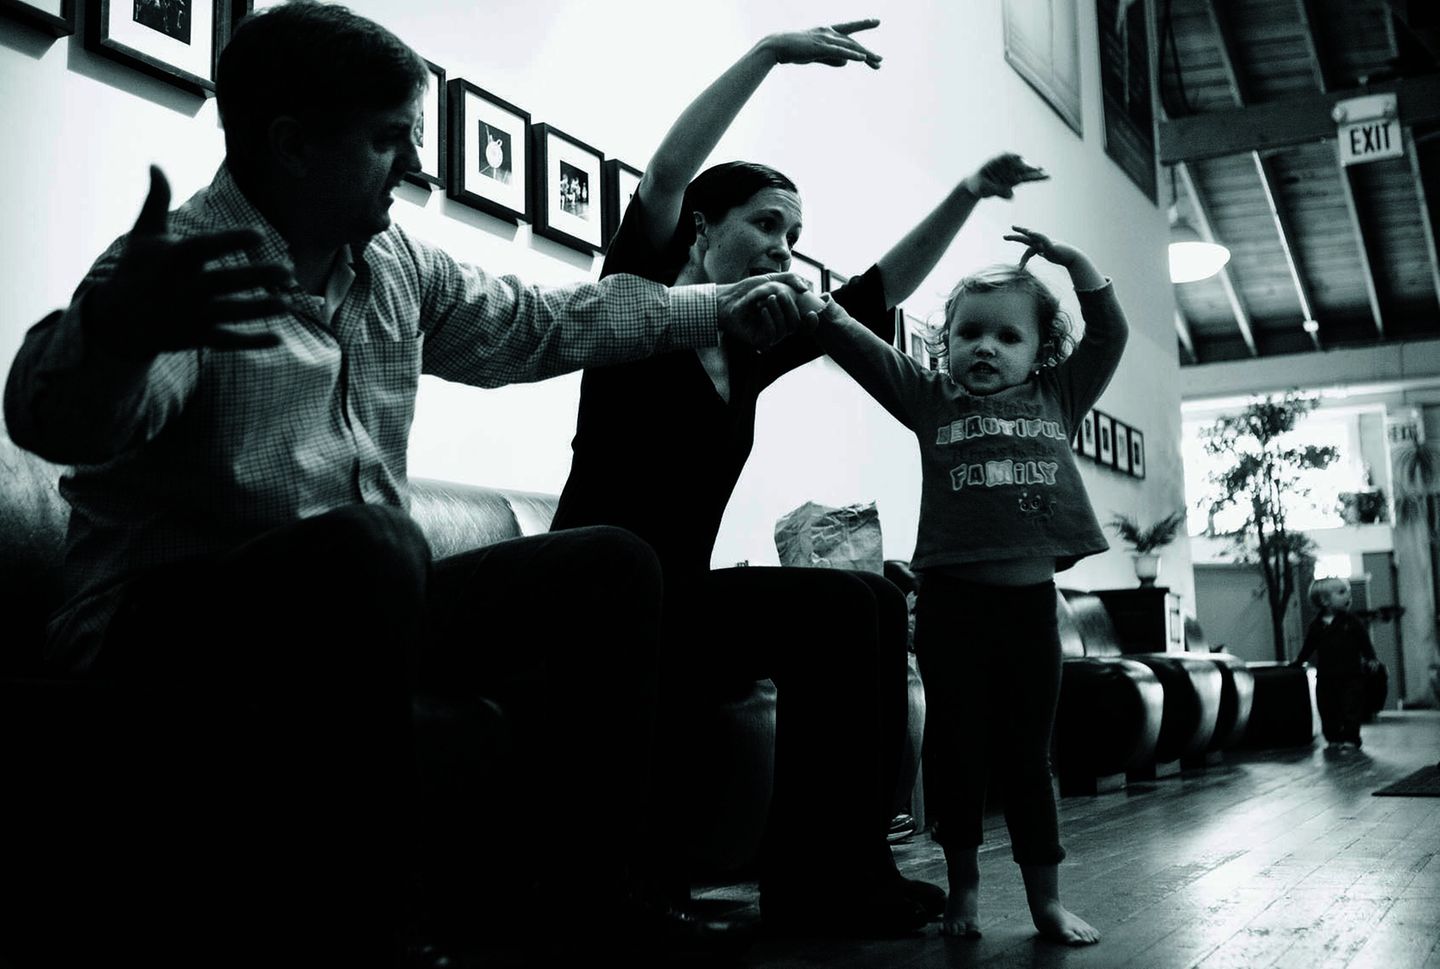 Martin, Kristin, Hannah und ihr kleiner Bruder Jonah (hinten) zwischen den Proben an der "City Ballet School" in San Francisco. Kristin tanzt nicht mehr selbst, sie unterrichtet. Martin ist immer noch musikalischer Direktor und Chefdirigent am "San Francisco Ballet" (2012).